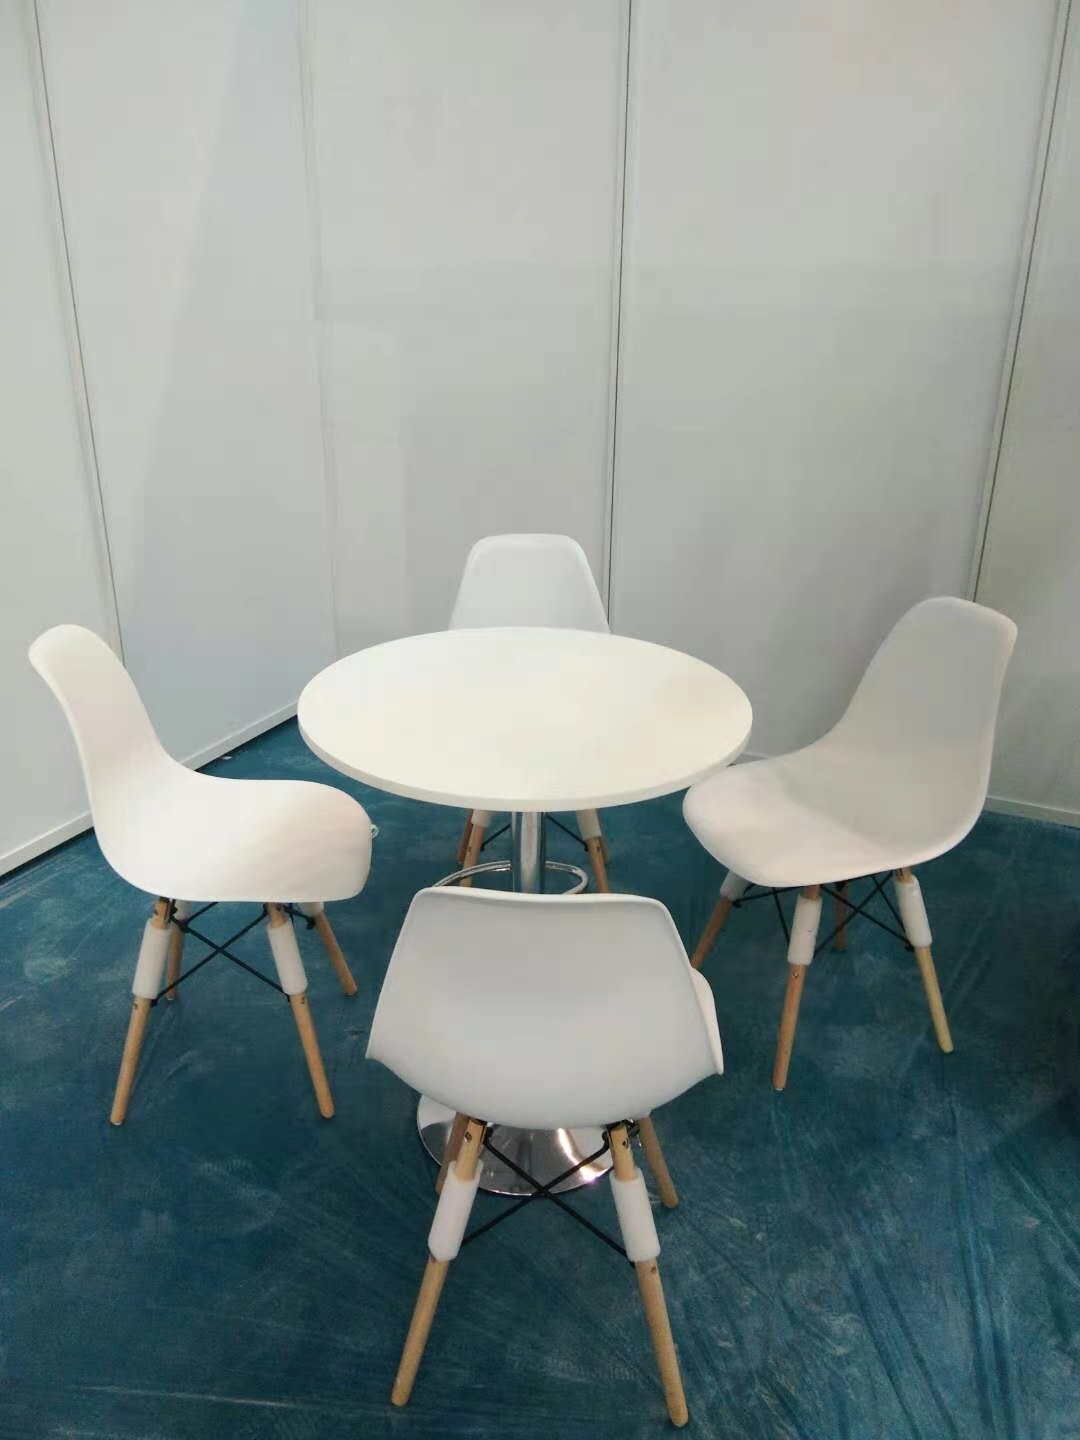 东莞创意桌椅厂家 展览展位搭建 多年搭建经验